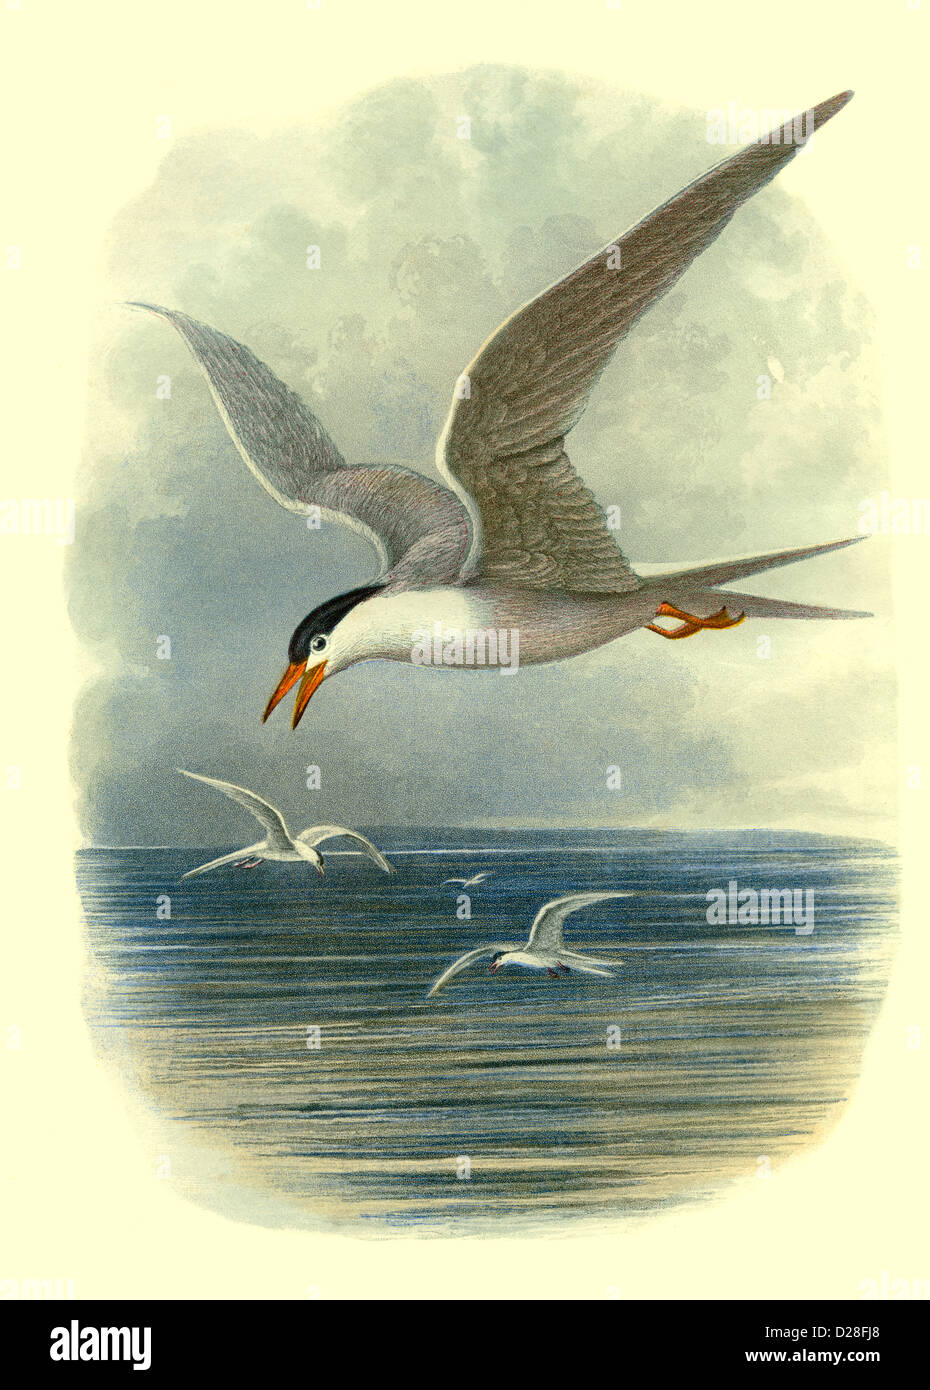 'Common Tern'-MÖWE hochauflösende, verbesserte Scans von antiquarischen viktorianischen Elementen Farbteller aus dem Vogelbuch von Cassell aus den 1860er Jahren „Gemeine Seeschwalbe“ Stockfoto